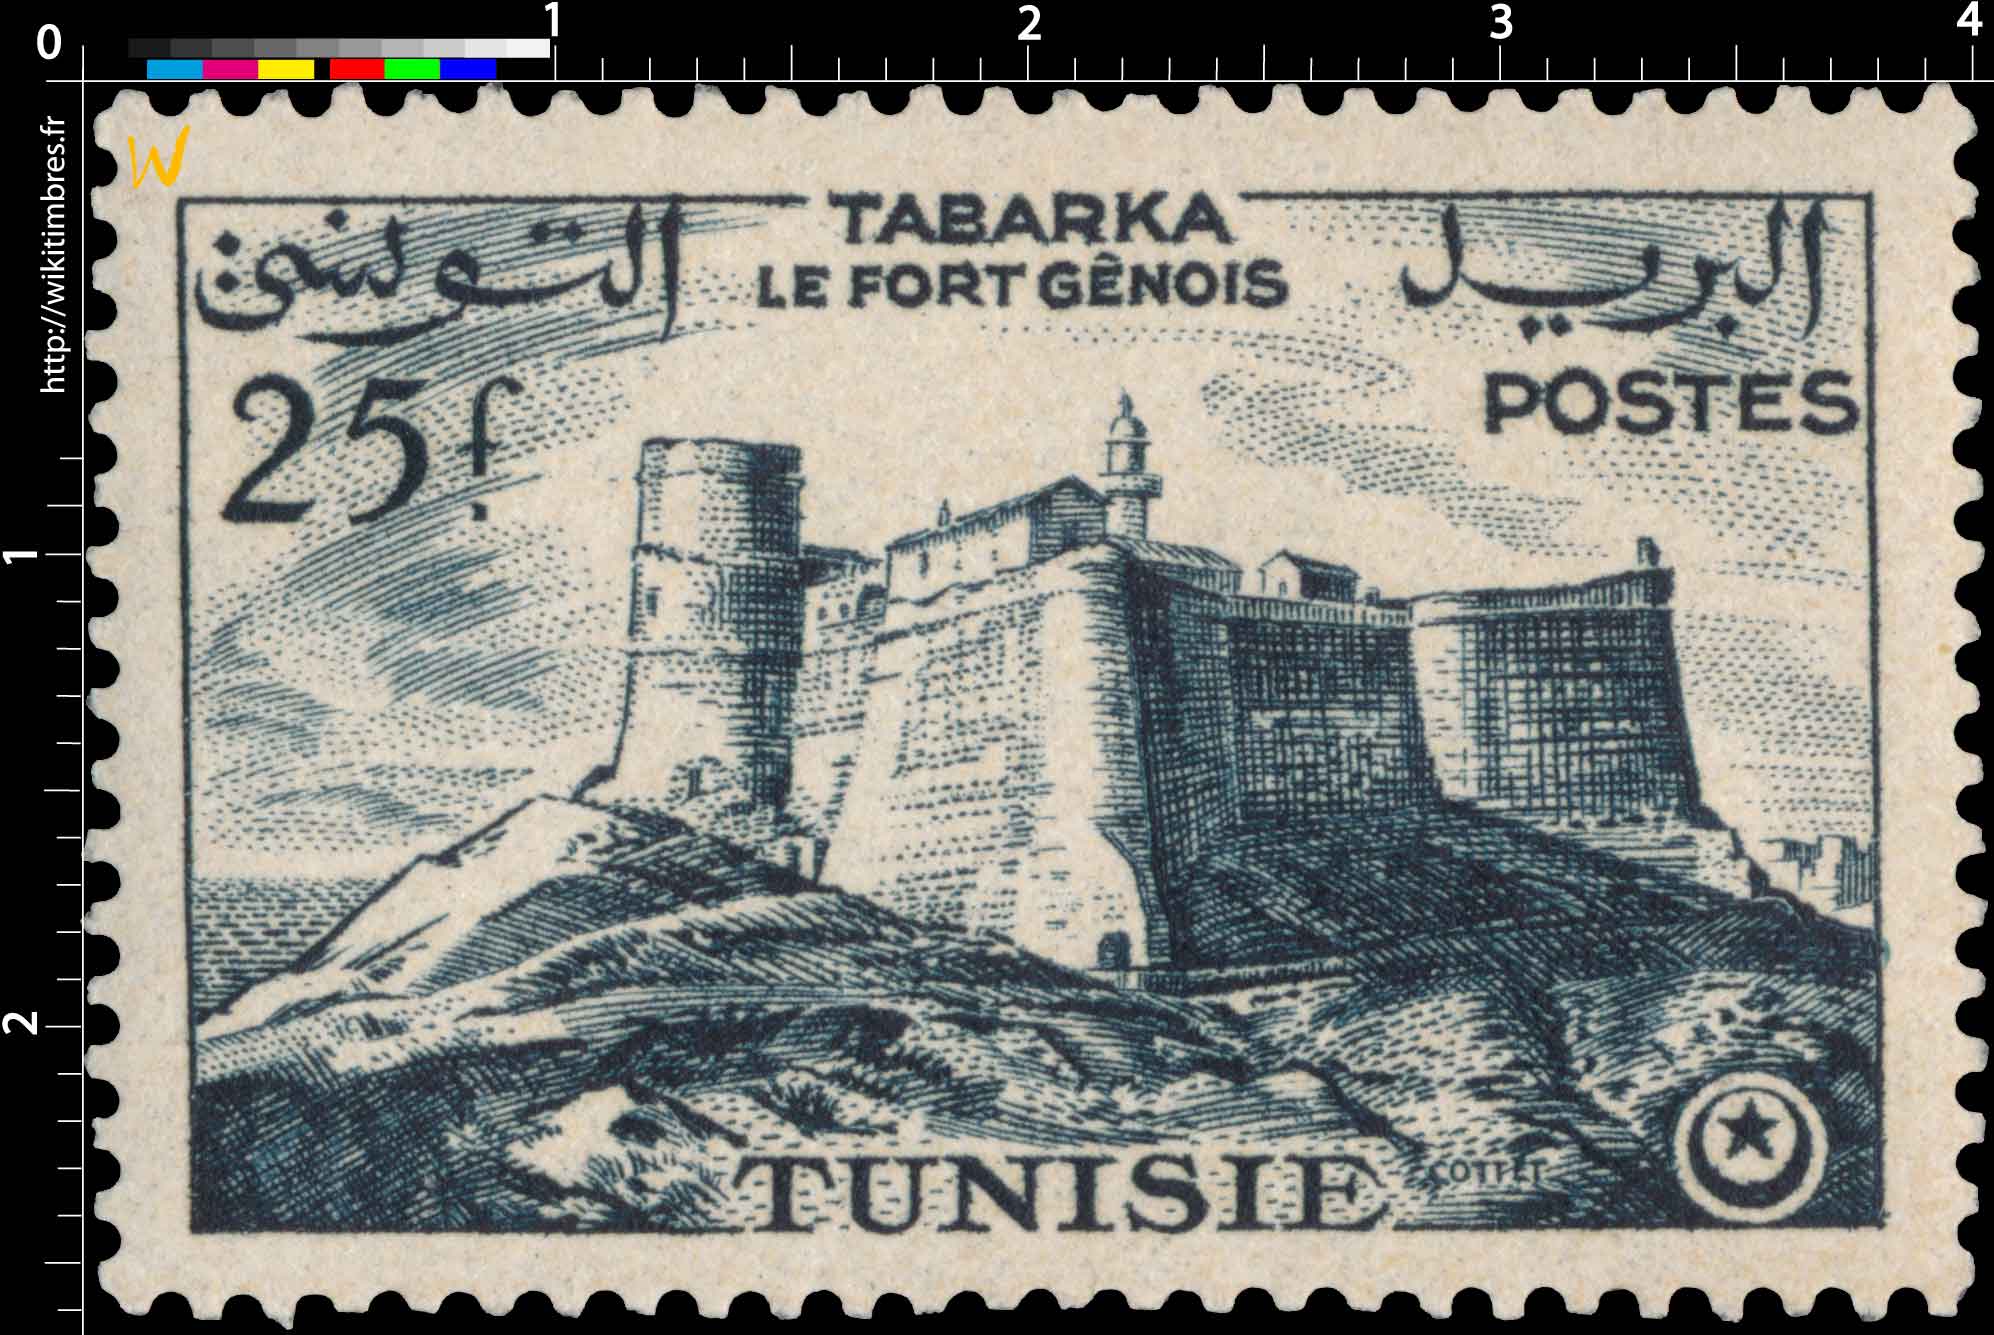 Tunisie - Tabarka, le fort génois